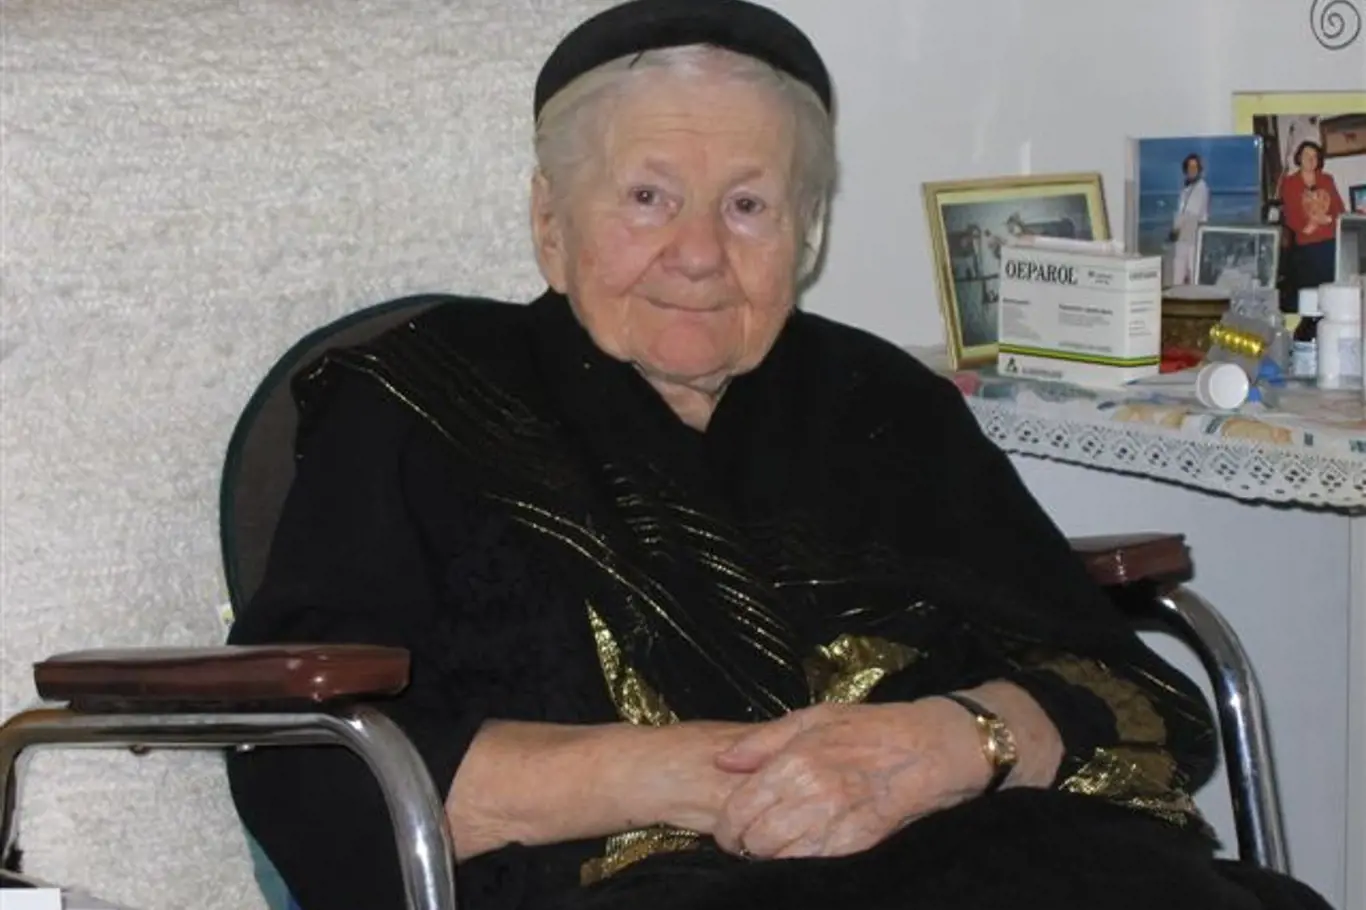 Irena Stanisława Sendlerowa, počeštěně Sendlerová, byla jednou z vůdčích osobností polského protinacistického odboje.